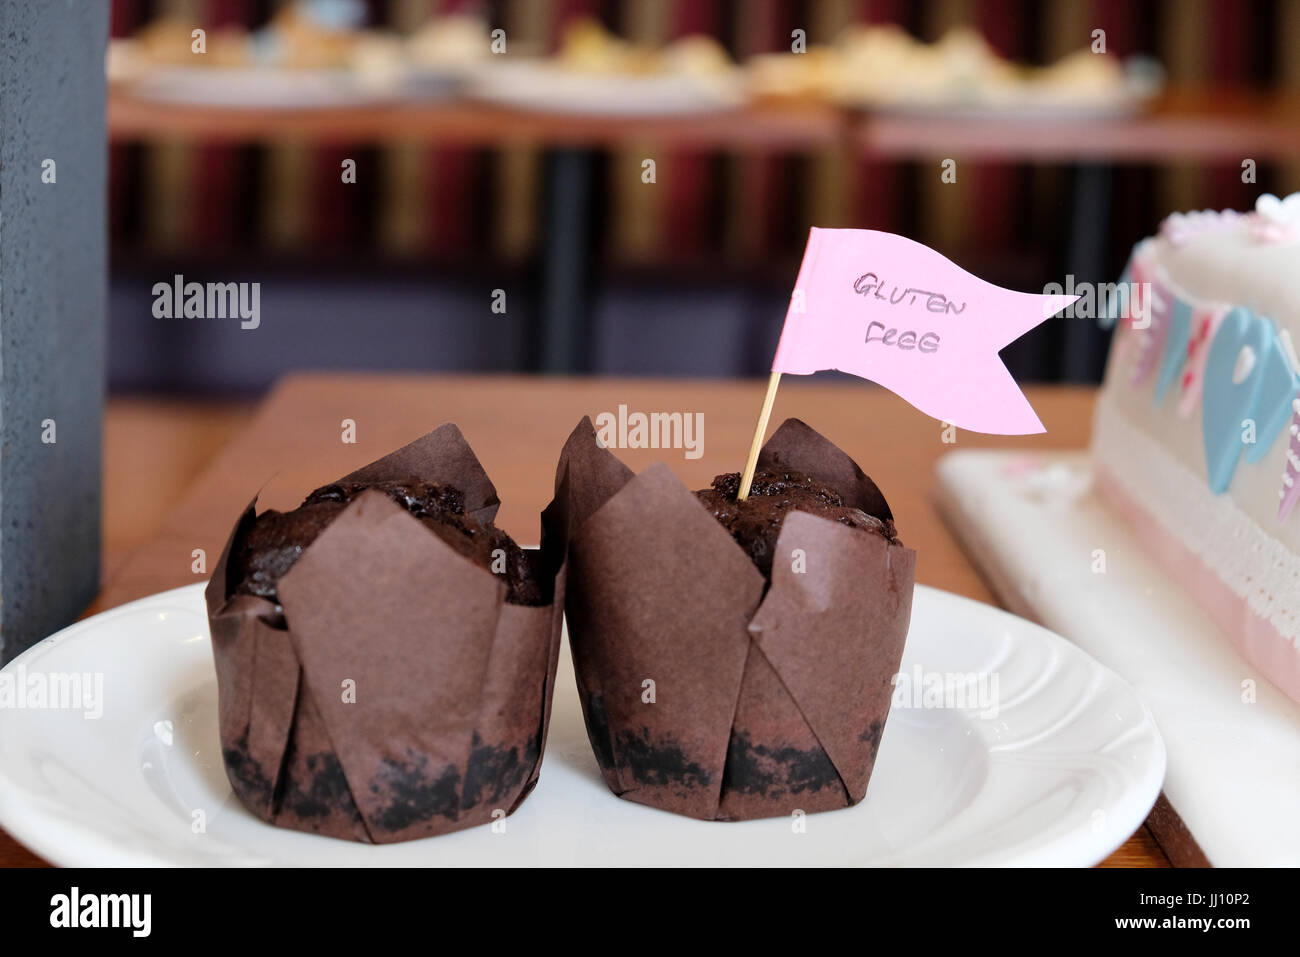 Due tortine di muffin al cioccolato, avvolte in casse di carta marrone, contrassegnate con una bandiera come prive di glutine, su un piatto come parte di un buffet di tavola Foto Stock